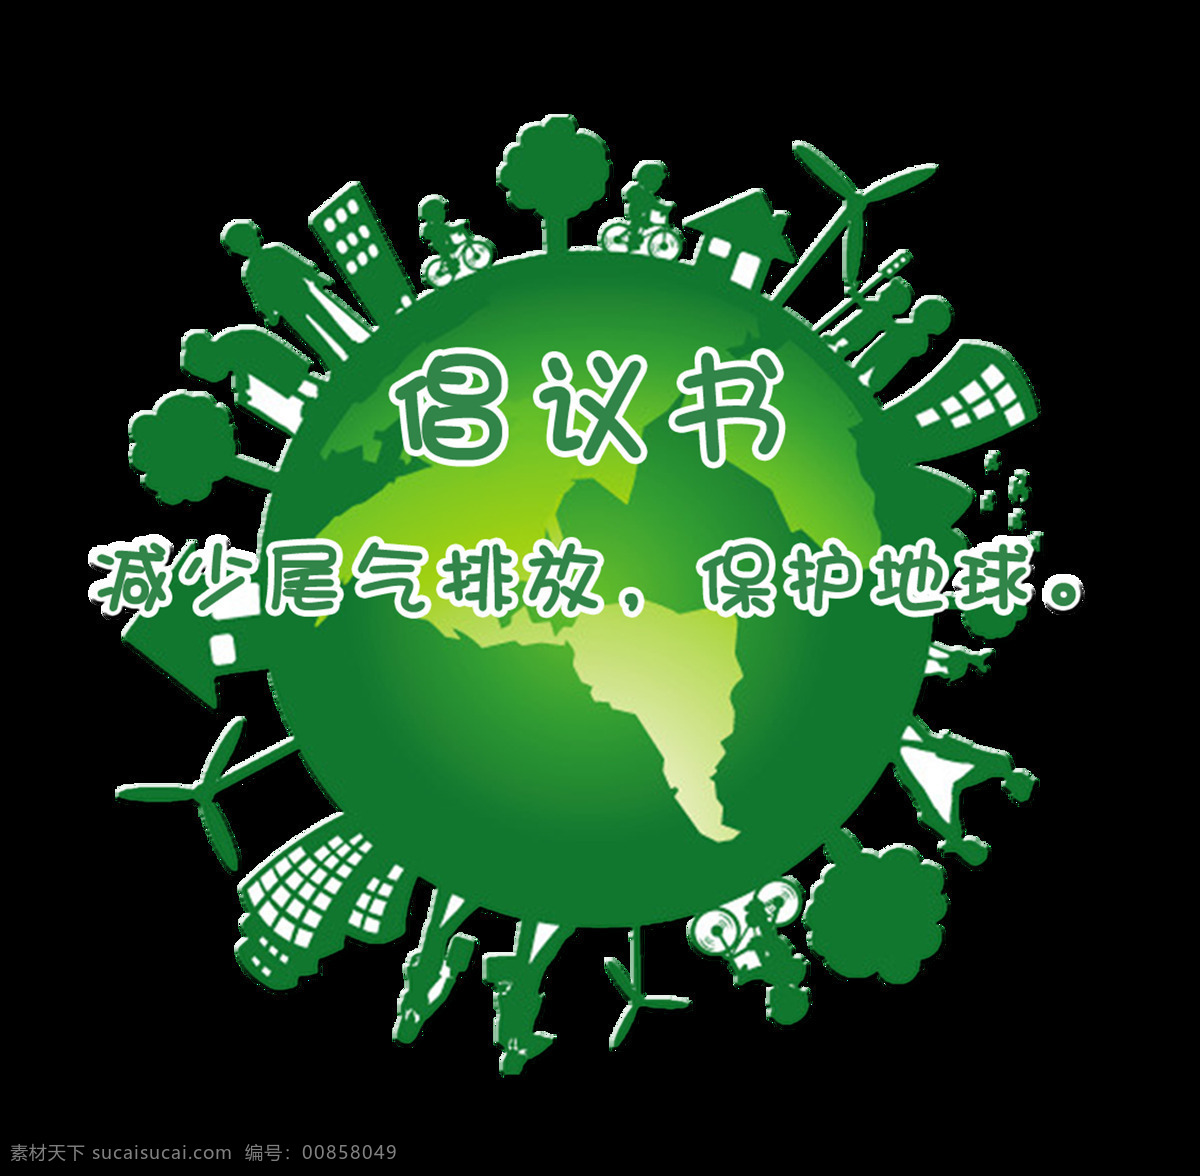 减少 尾气 排放 保护 地球 环境艺术 字 环保 绿色 字体 减少尾气排放 保护地球 艺术字 倡议书 免抠图 元素